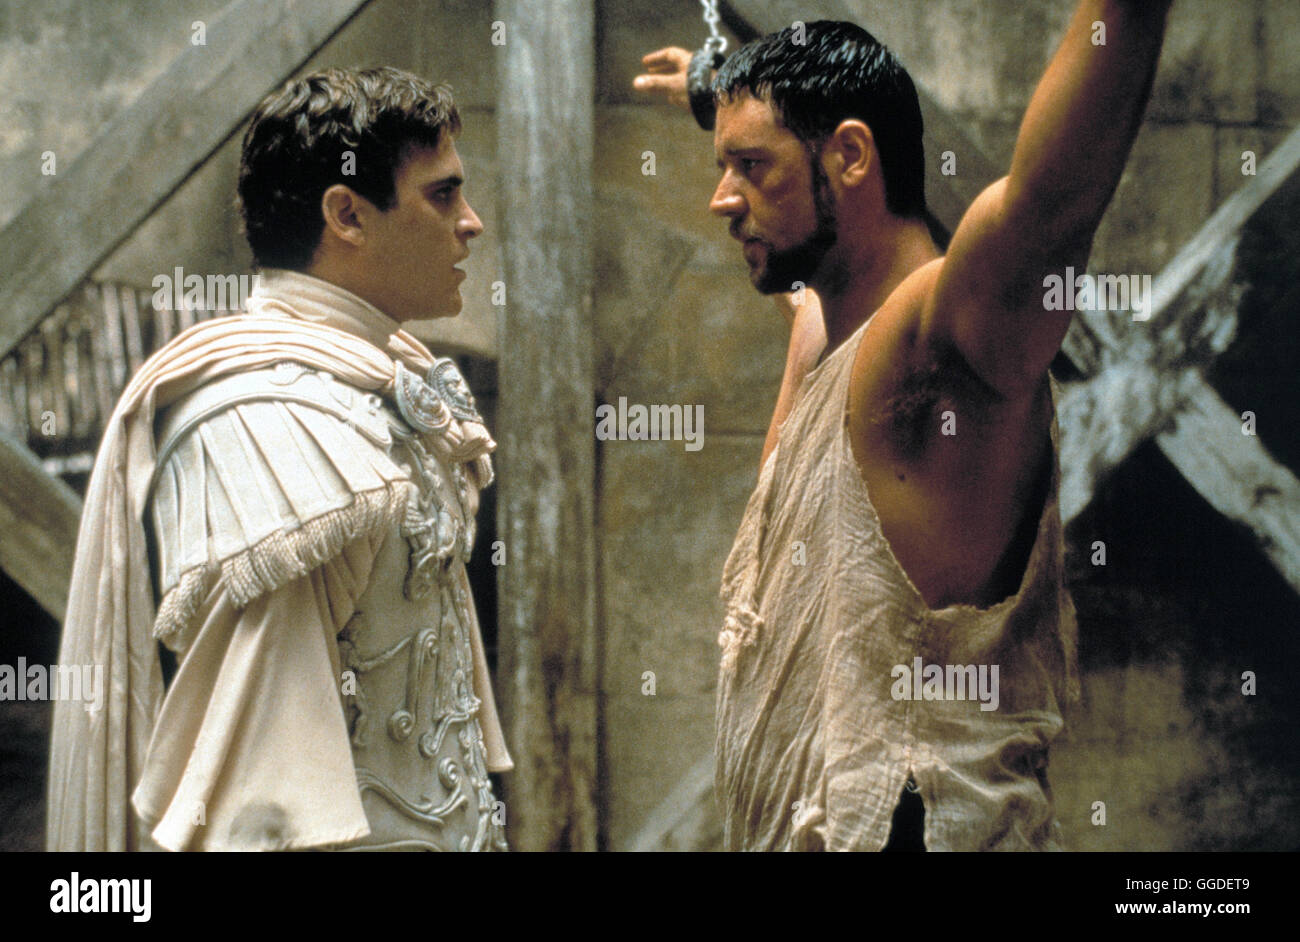 GLADIATOR / GLADIATOR UK/USA 2000 / Ridley Scott Kaiser Marcus Aurelius bestimmt den verdienten General Maximus zu seinem Nachfolger. Doch sein eifersüchtiger Sohn Commodus vereitelt nach dem Tod seines Vaters dessen Pläne. Er verstößt Maximus und dessen Familie und gibt den Befehl sie zu töten. Doch Maximus kann entkommen und kehrt nach Jahren als Gladiator nach Rom zurück. Er hat nur ein Ziel vor Augen: den Mord an seiner Familie zu rächen und den Herrscher Roms zu töten. Szene mit JOAQUIN PHOENIX (Emperor Commodus) und RUSSEL CROWE (Maximus) Regie: Ridley Scott aka. GLADIATOR Stock Photo